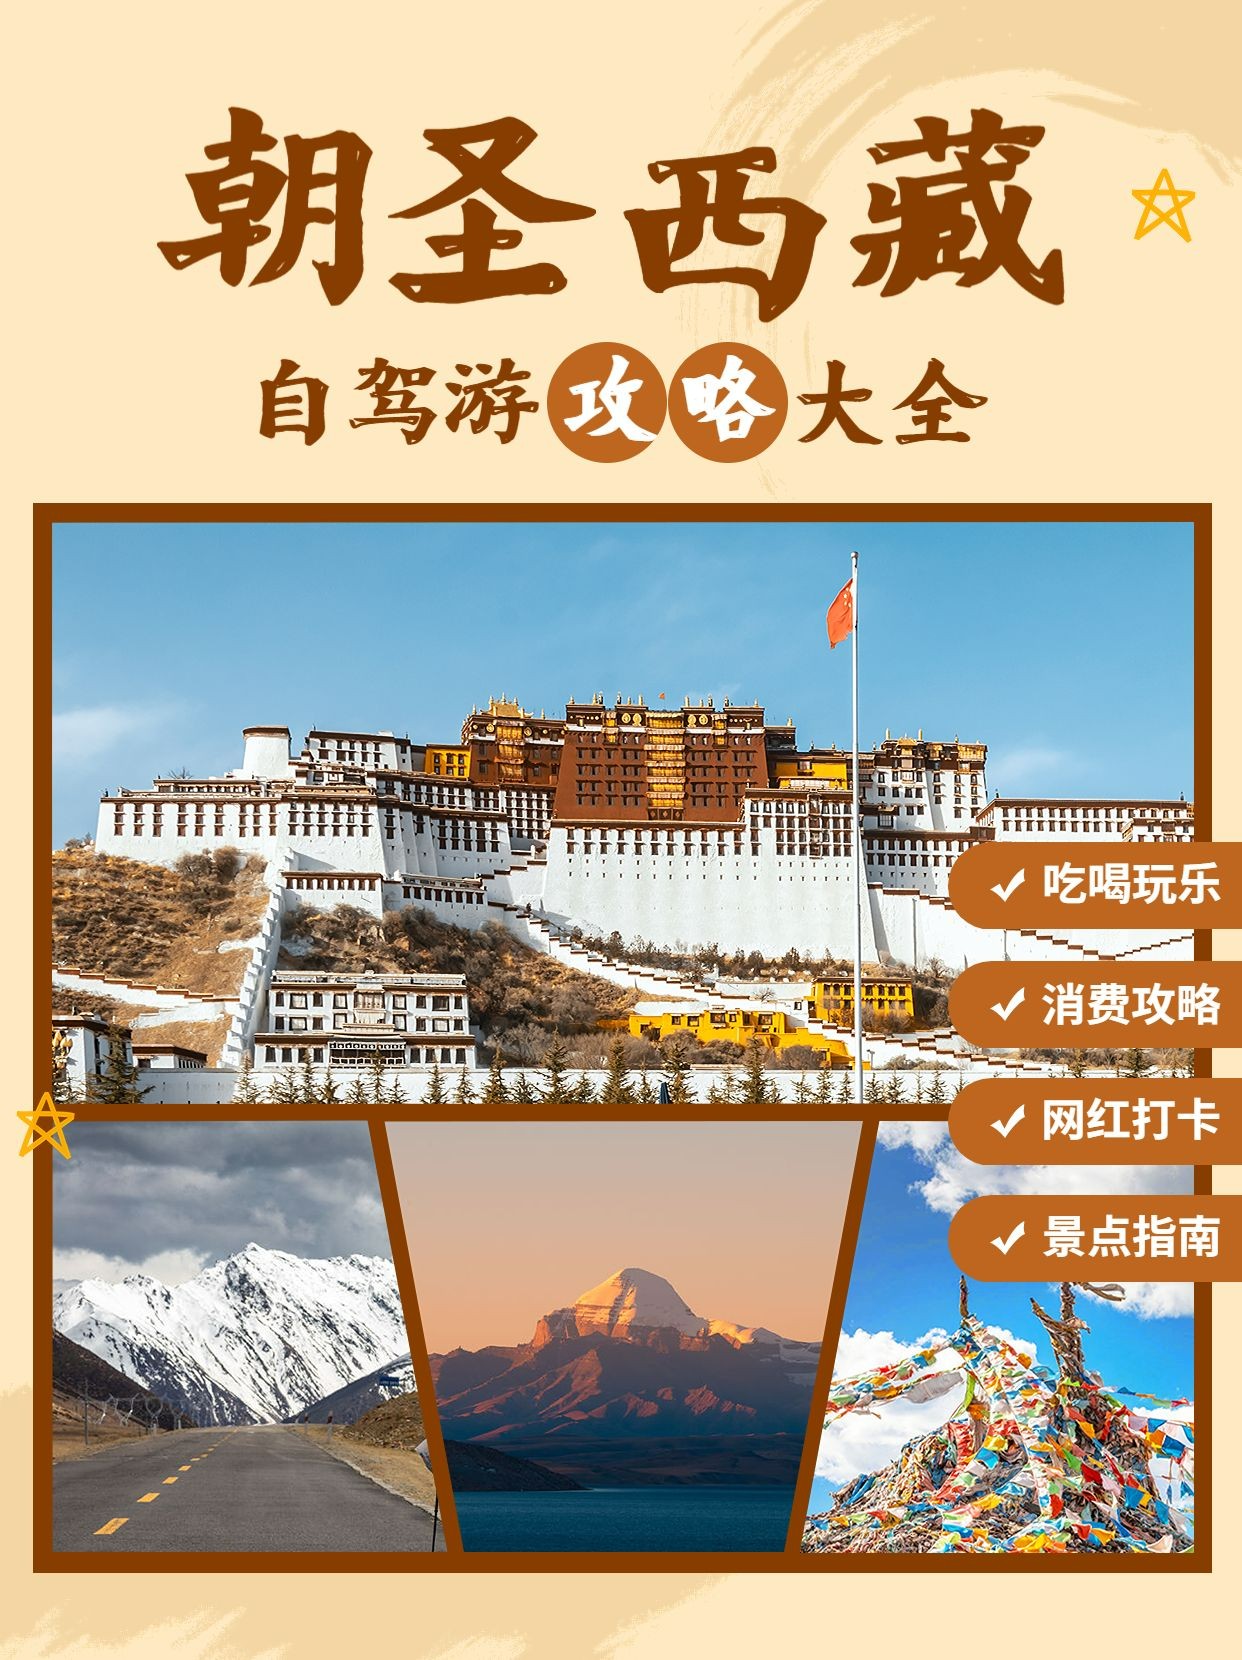 旅游出行西藏景区景点推荐小红书配图